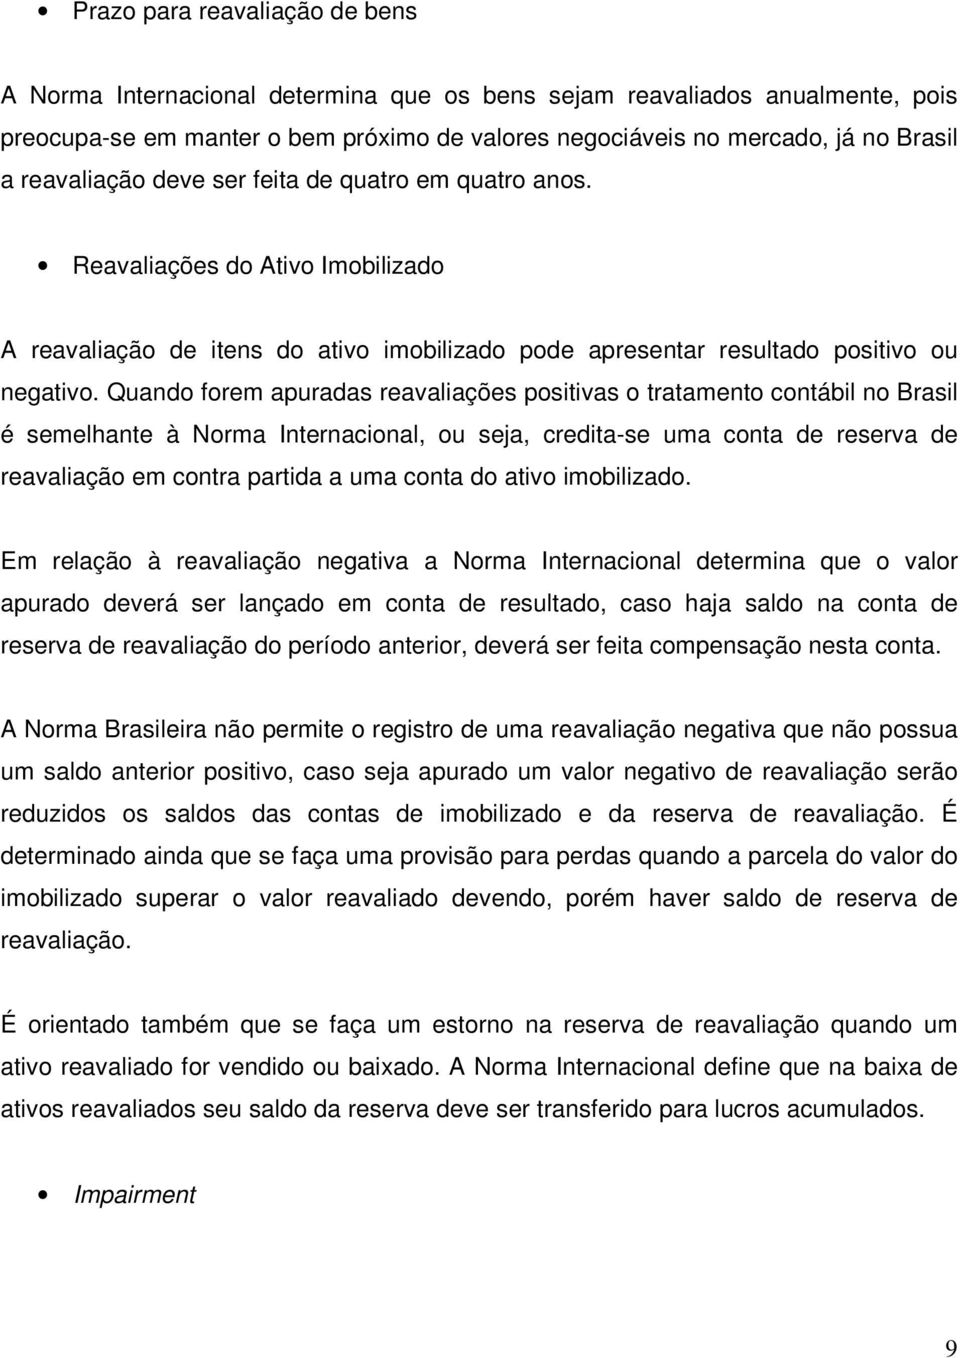 Quando forem apuradas reavaliações positivas o tratamento contábil no Brasil é semelhante à Norma Internacional, ou seja, credita-se uma conta de reserva de reavaliação em contra partida a uma conta